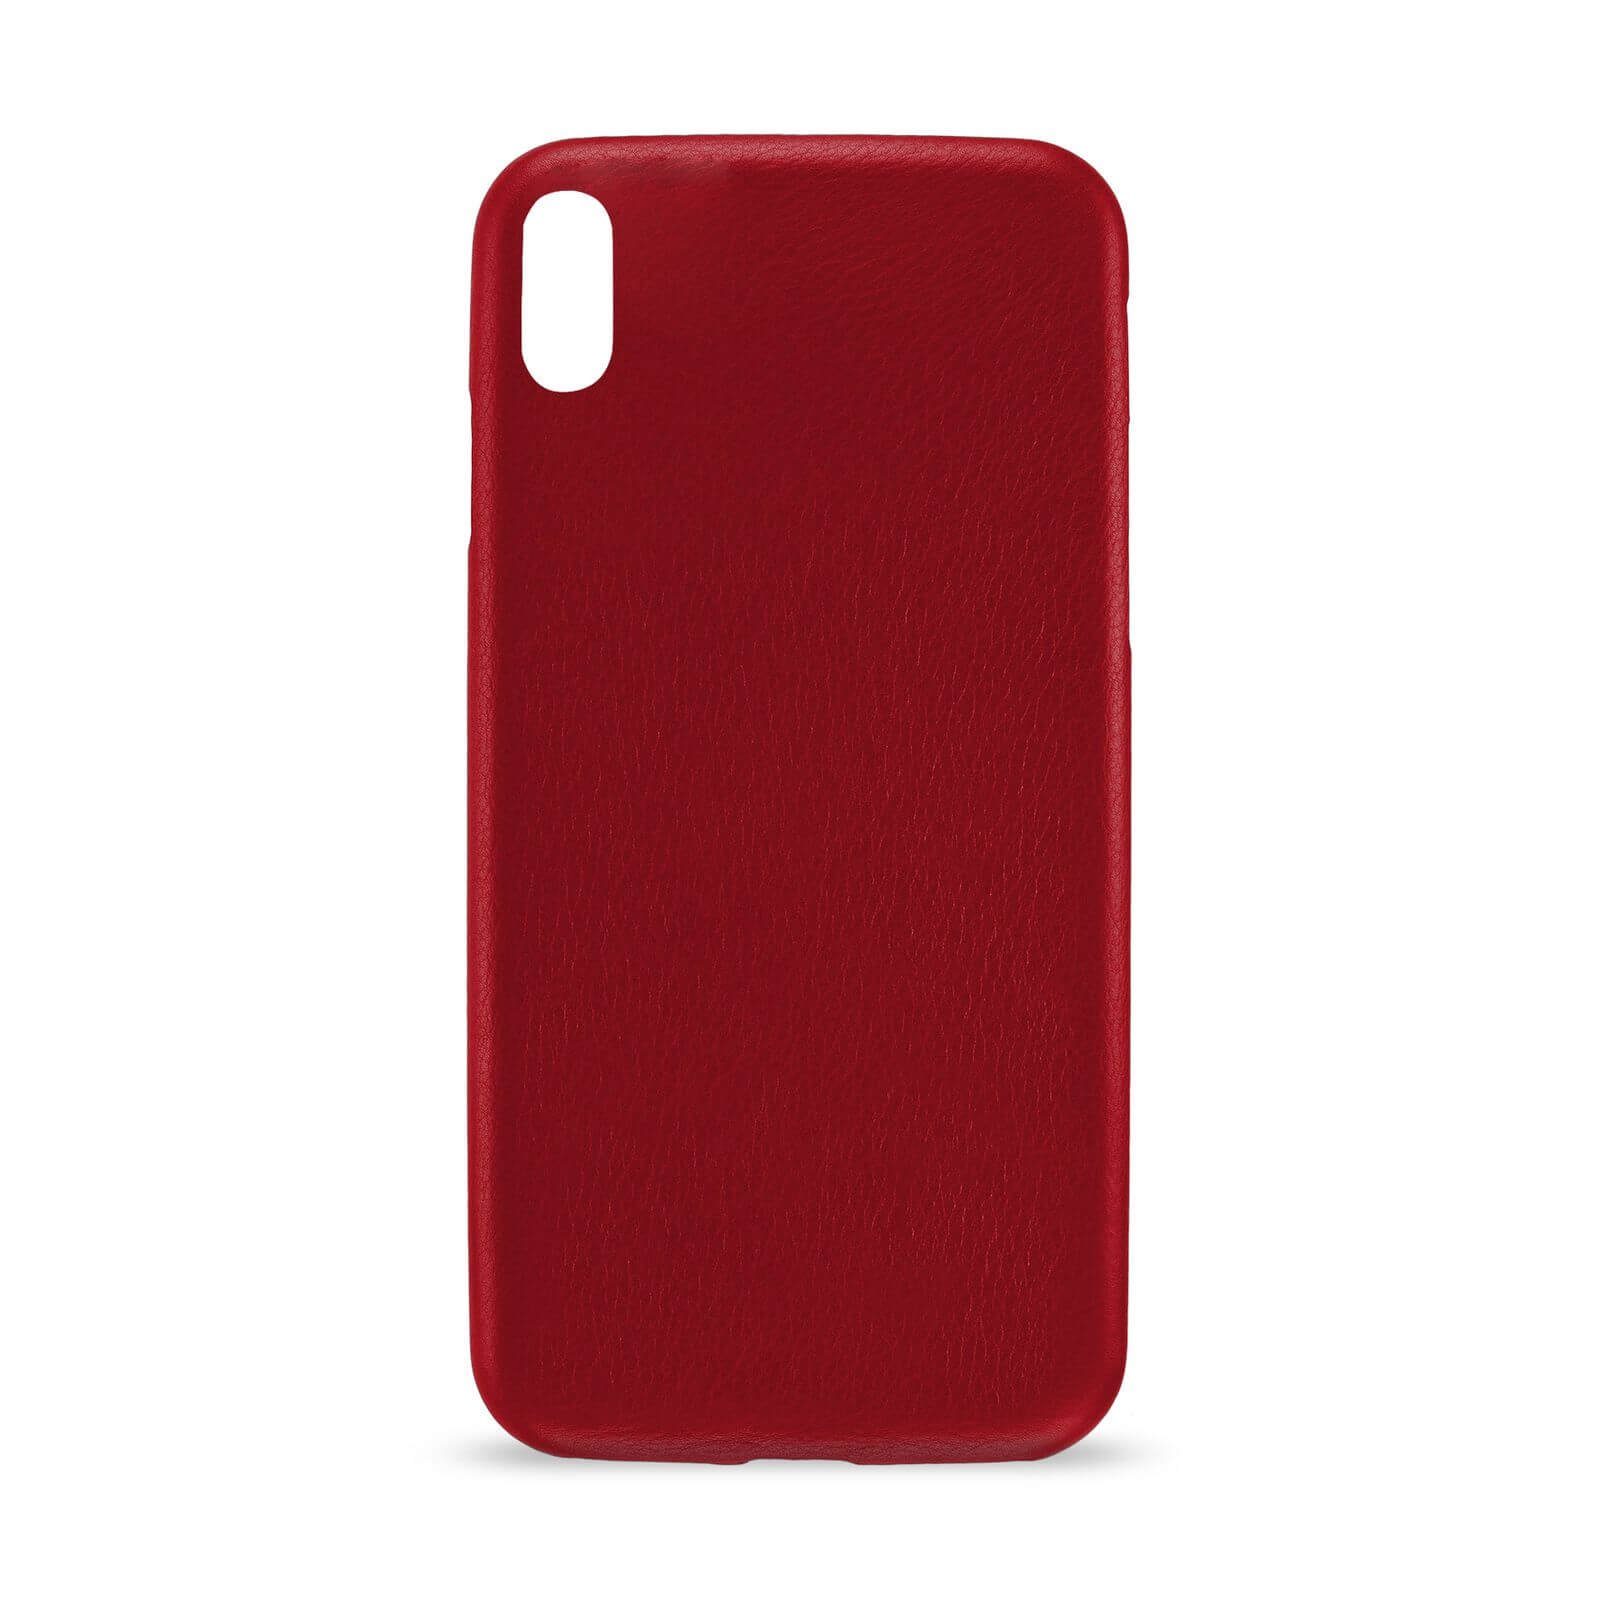 Artwizz Smartphone-Hülle »Artwizz Leather Clip Handyhülle designed für [ iPhone XS / X] - Schlanke Schutzhülle aus leicht genarbtem Echt-Leder -  Rot« iPhone Xs, iPhone X online kaufen | OTTO